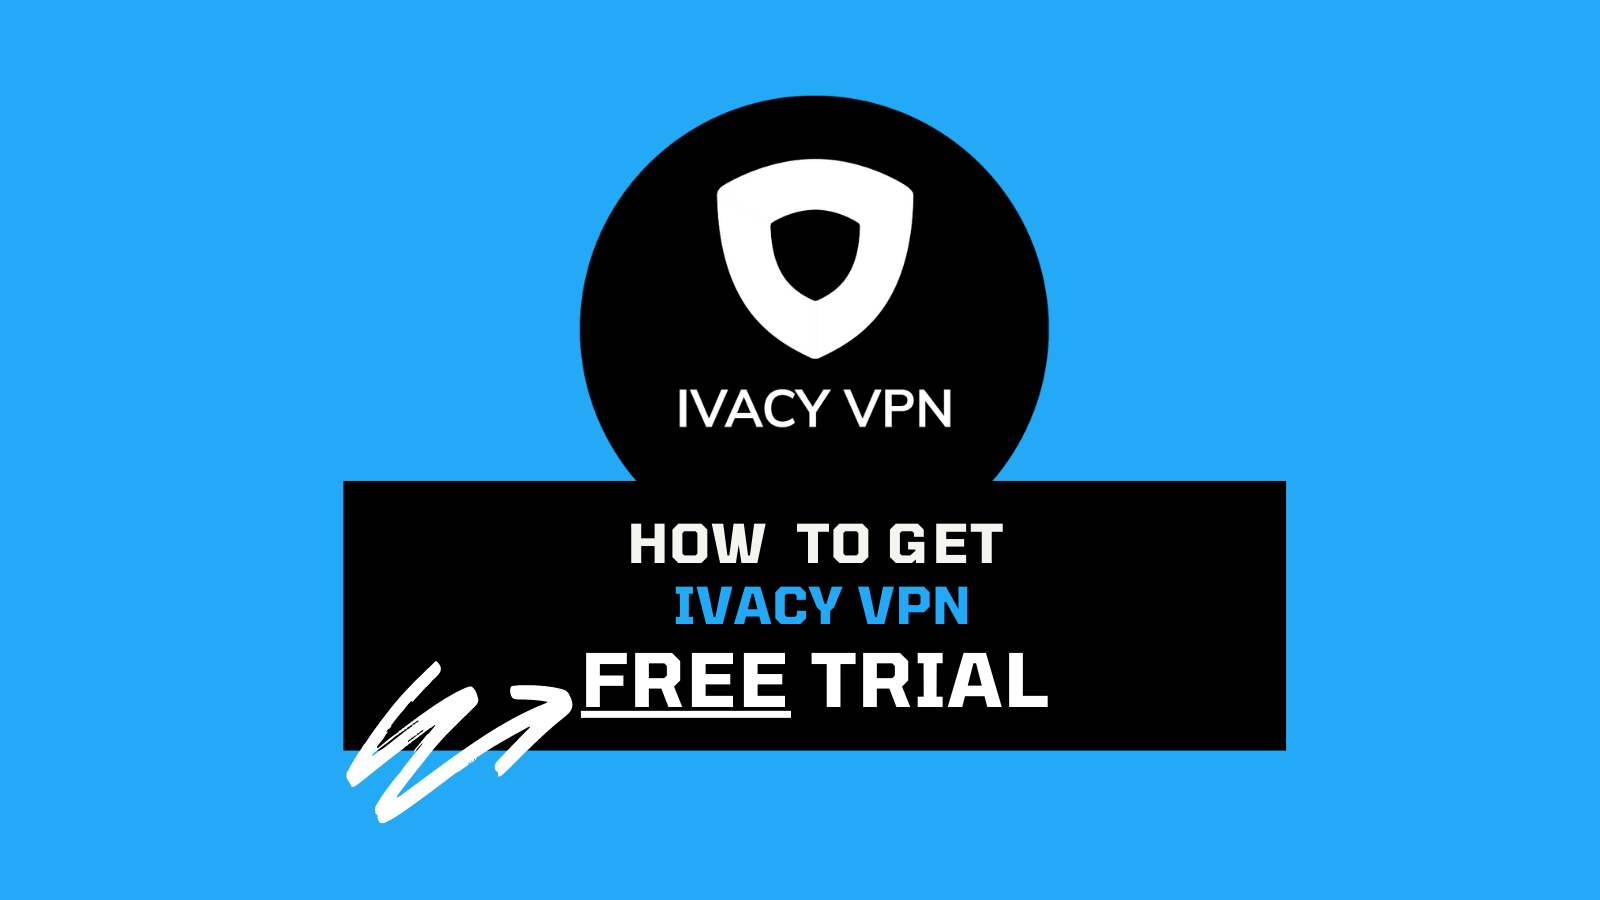 ivacy vpn free